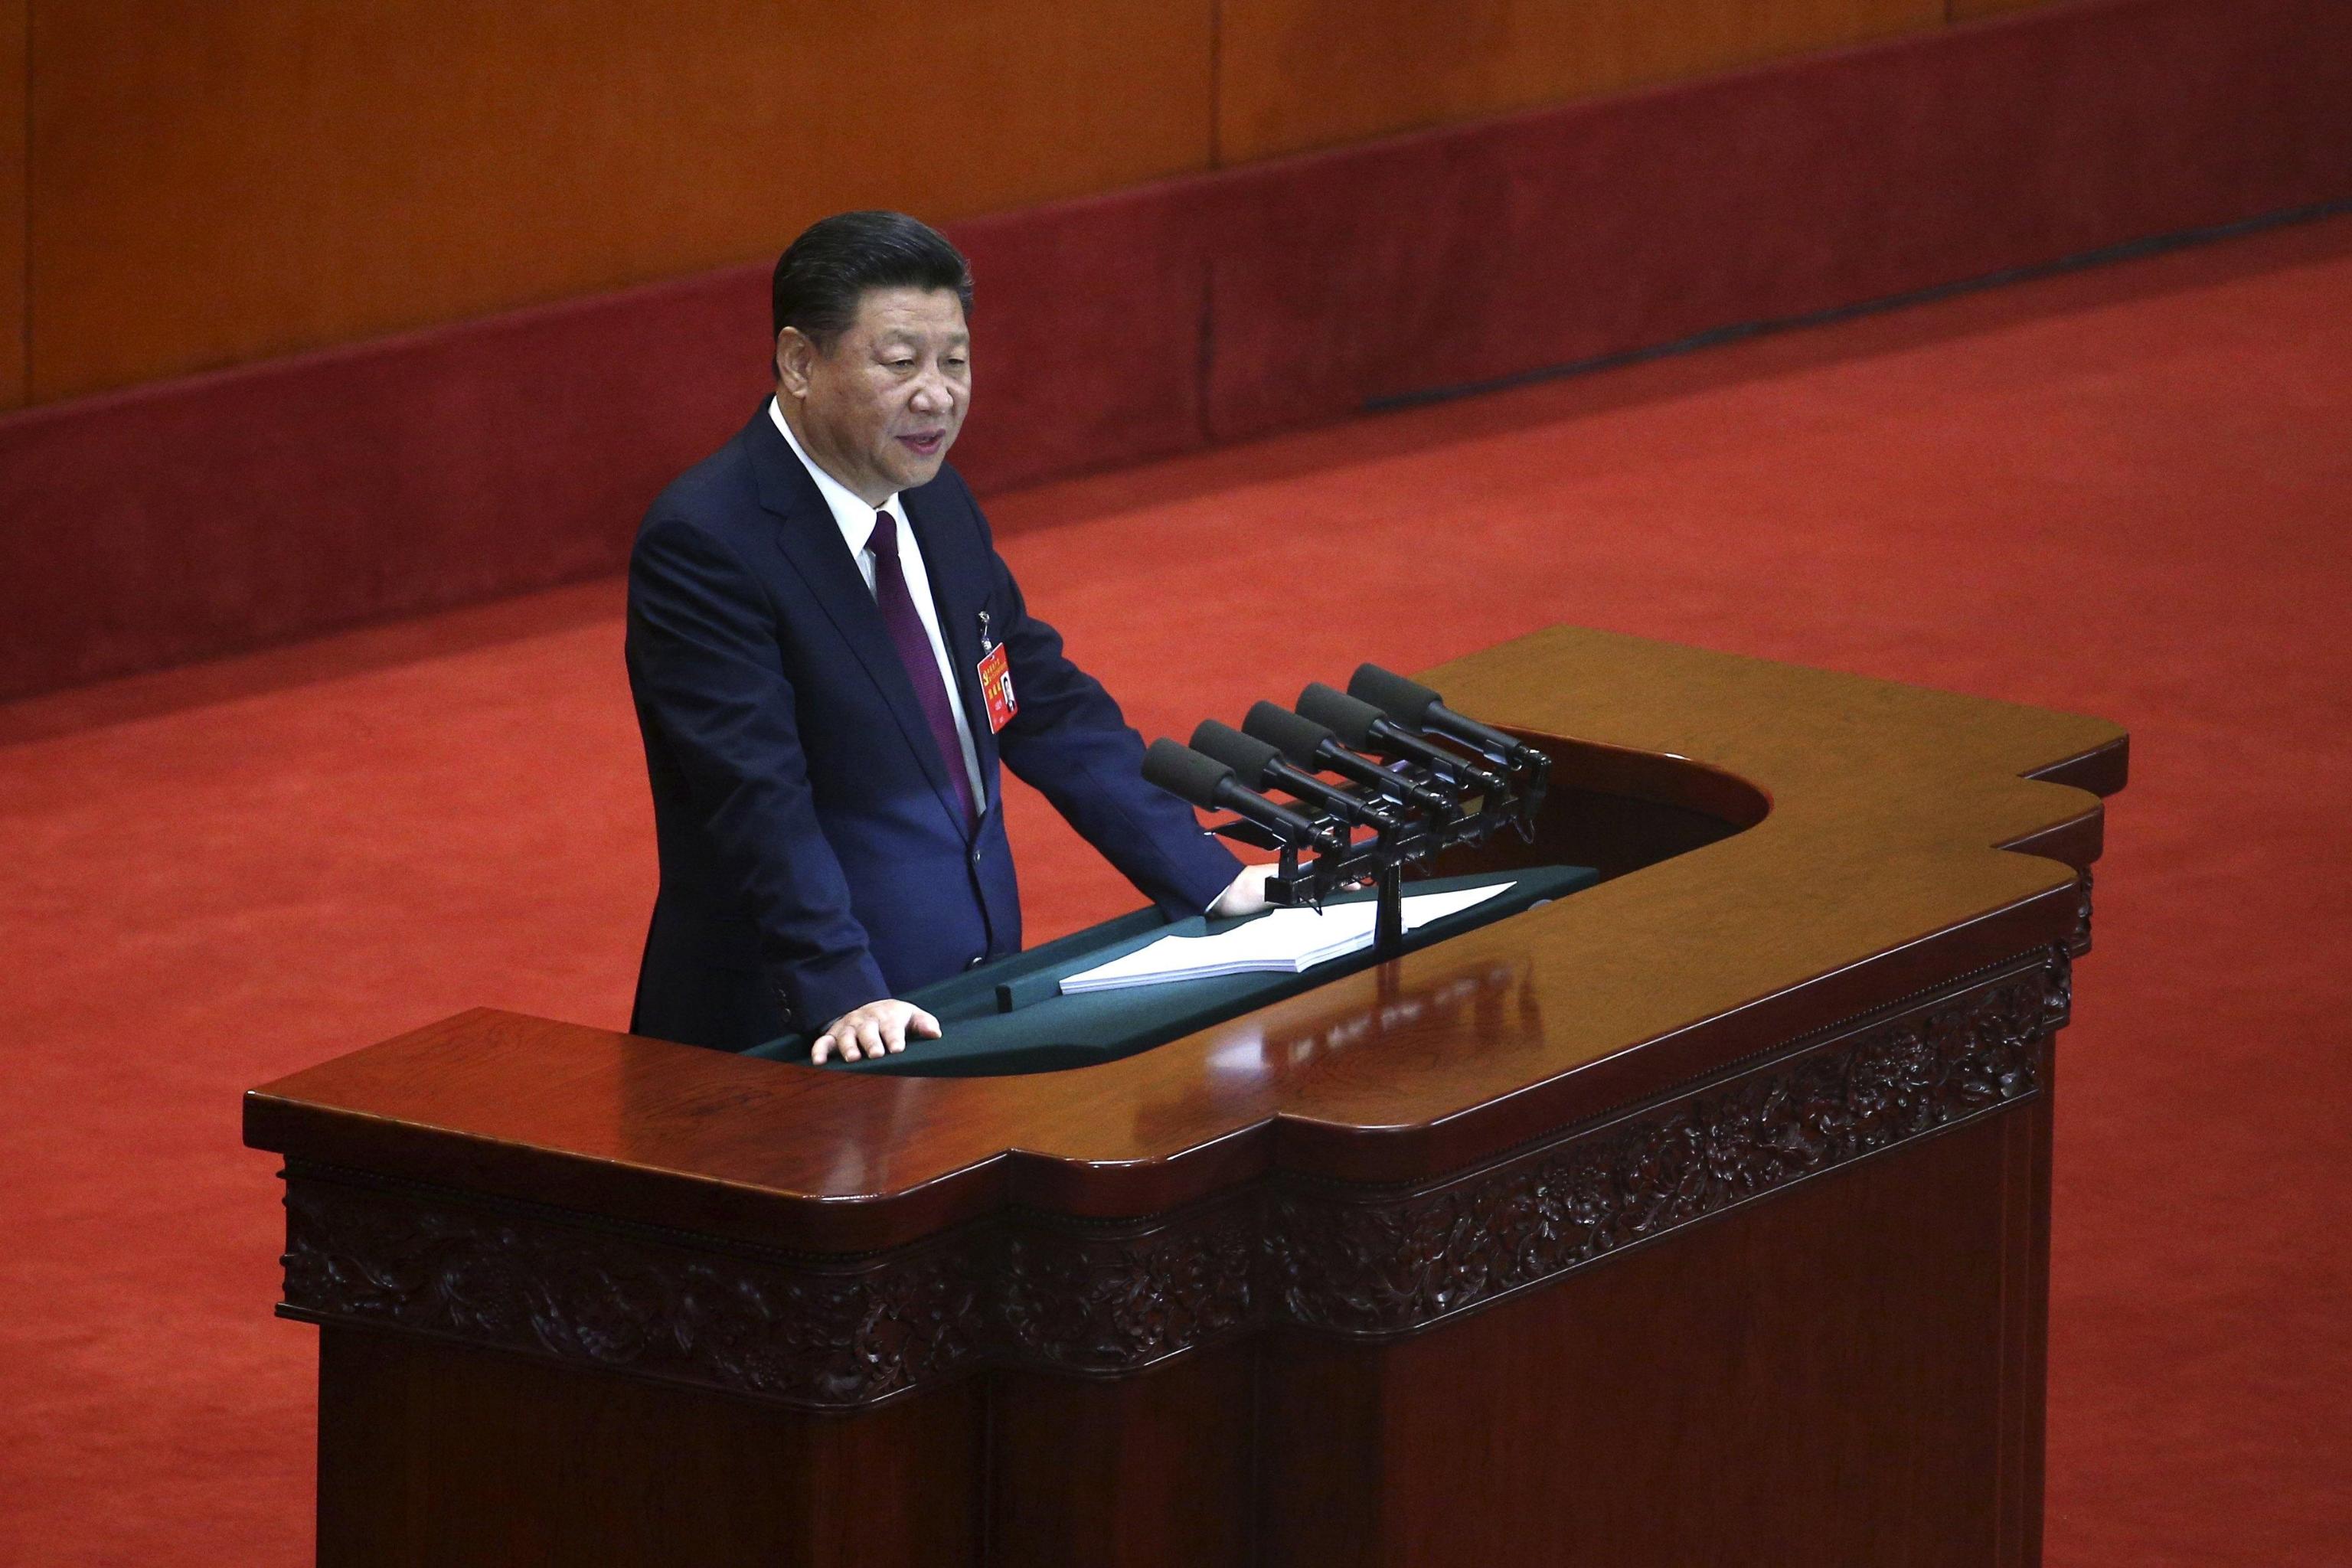 Il presidente Xi Jinping tiene il suo discorso alla platea, probabilmente sarà ancora lui il segretario del partito per i prossimi 5 anni